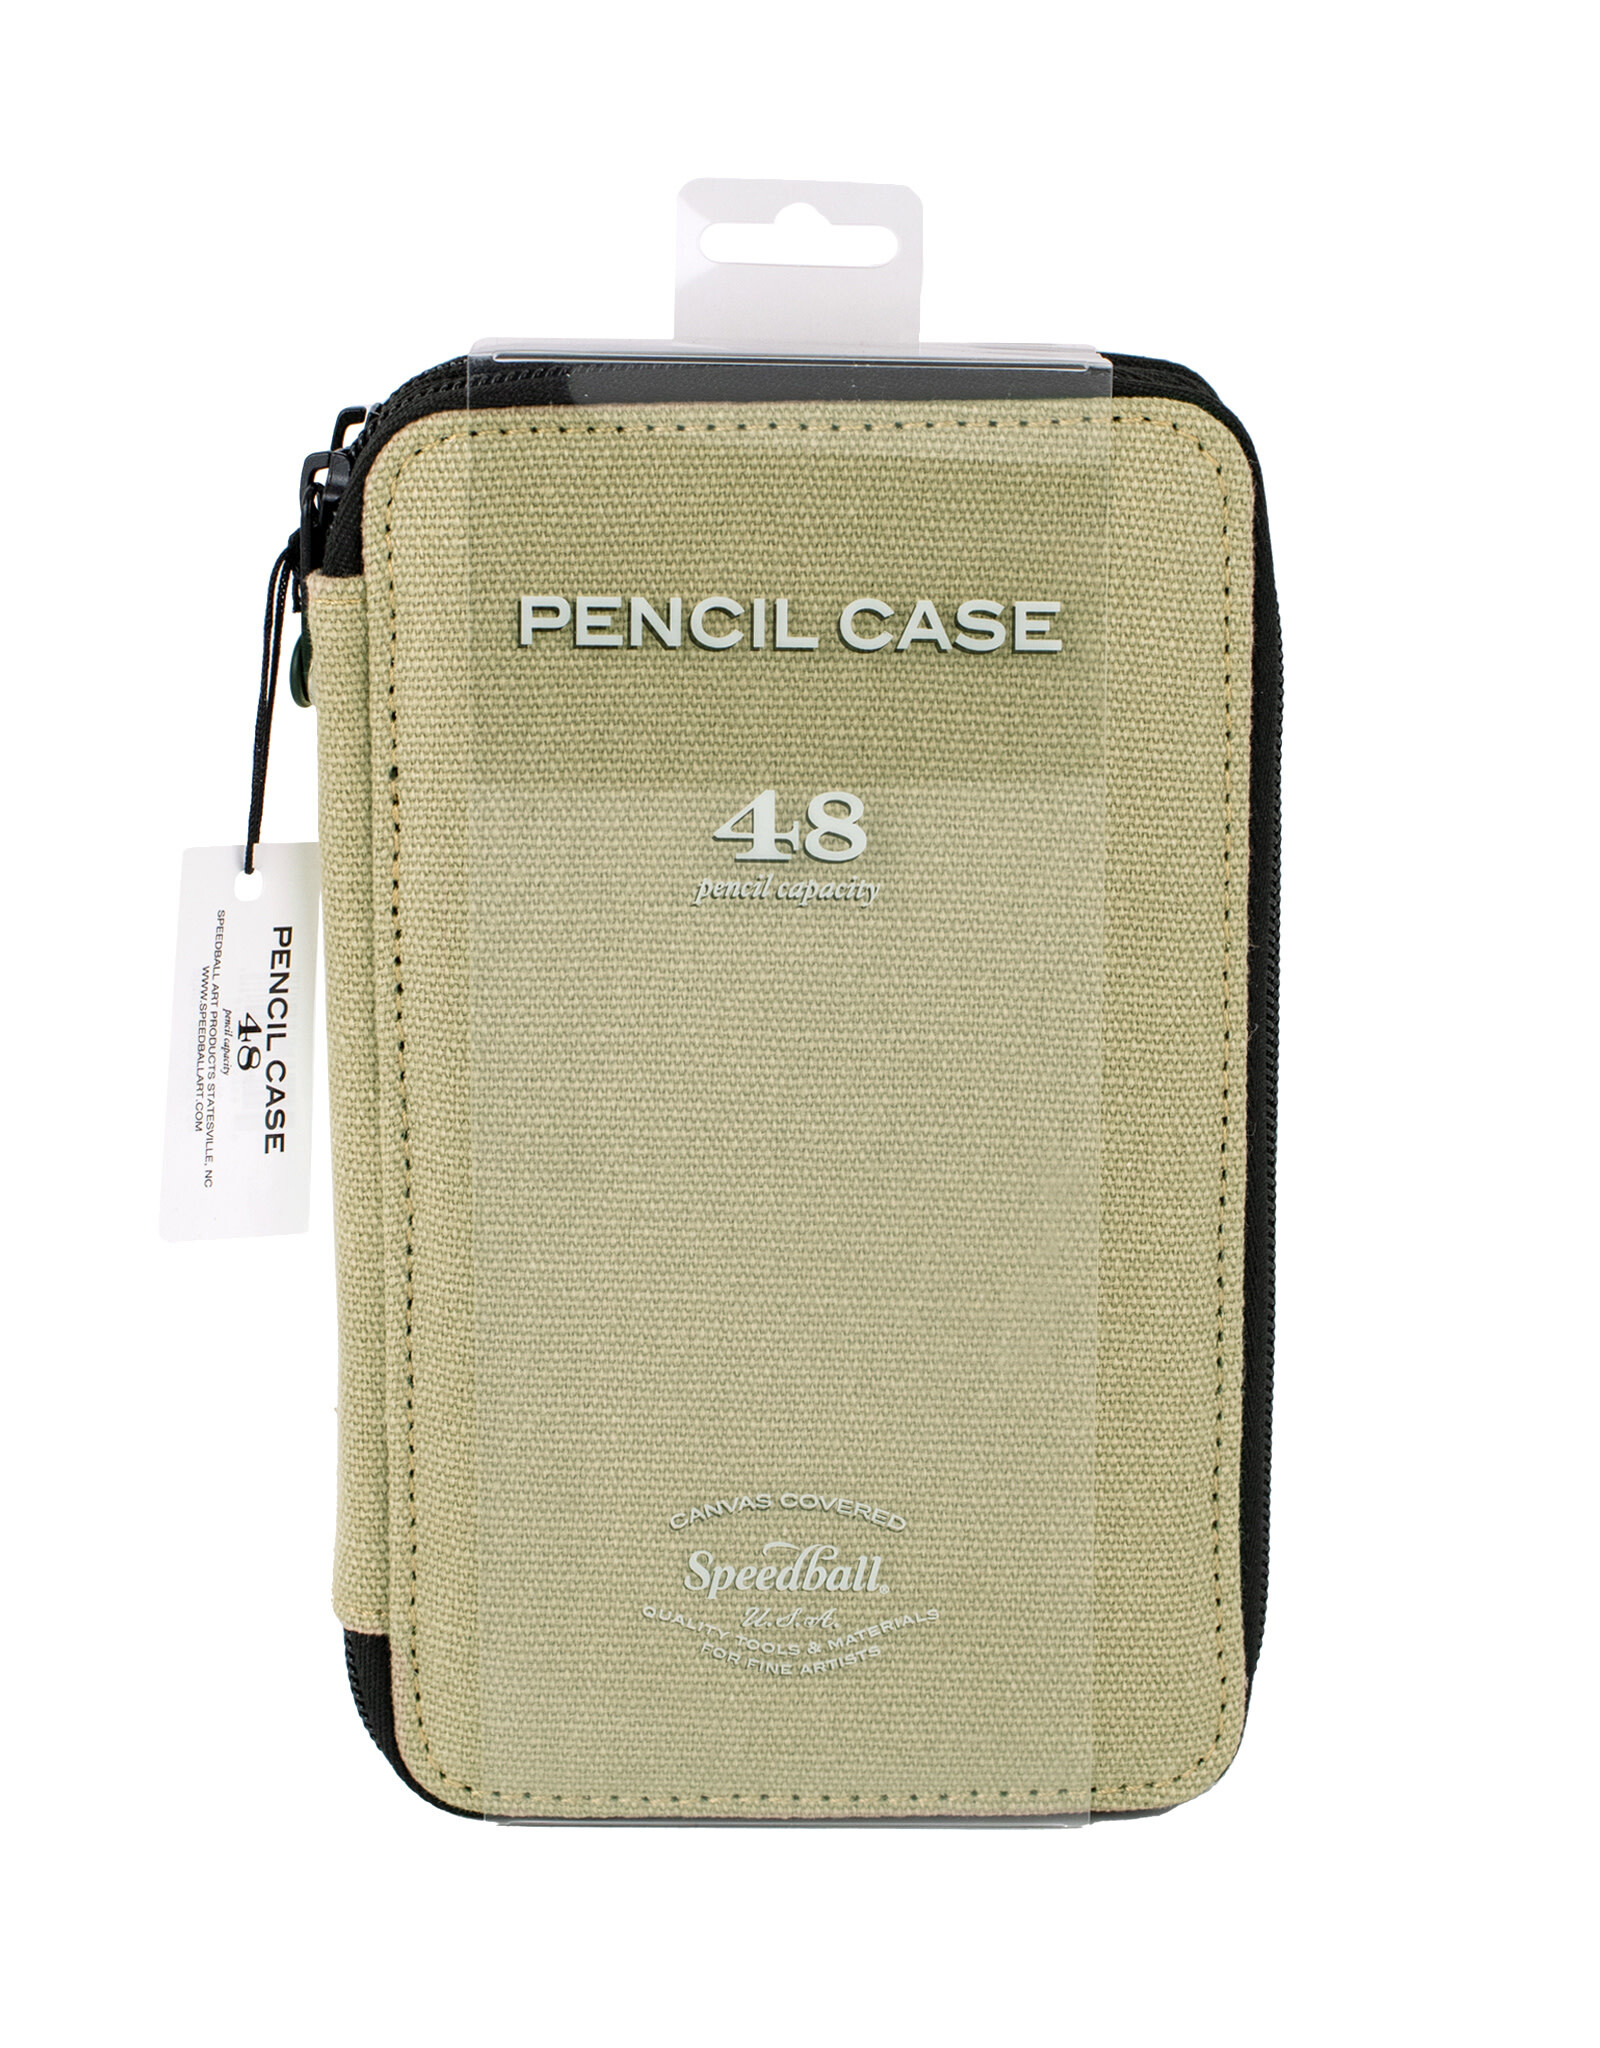 Leather Pencil Case Leather Pencil Pouch Pen Leather Case Tool Case Leather  Brush Pouch Gift for Painter Paint Case Mini Pencil Case Artist 